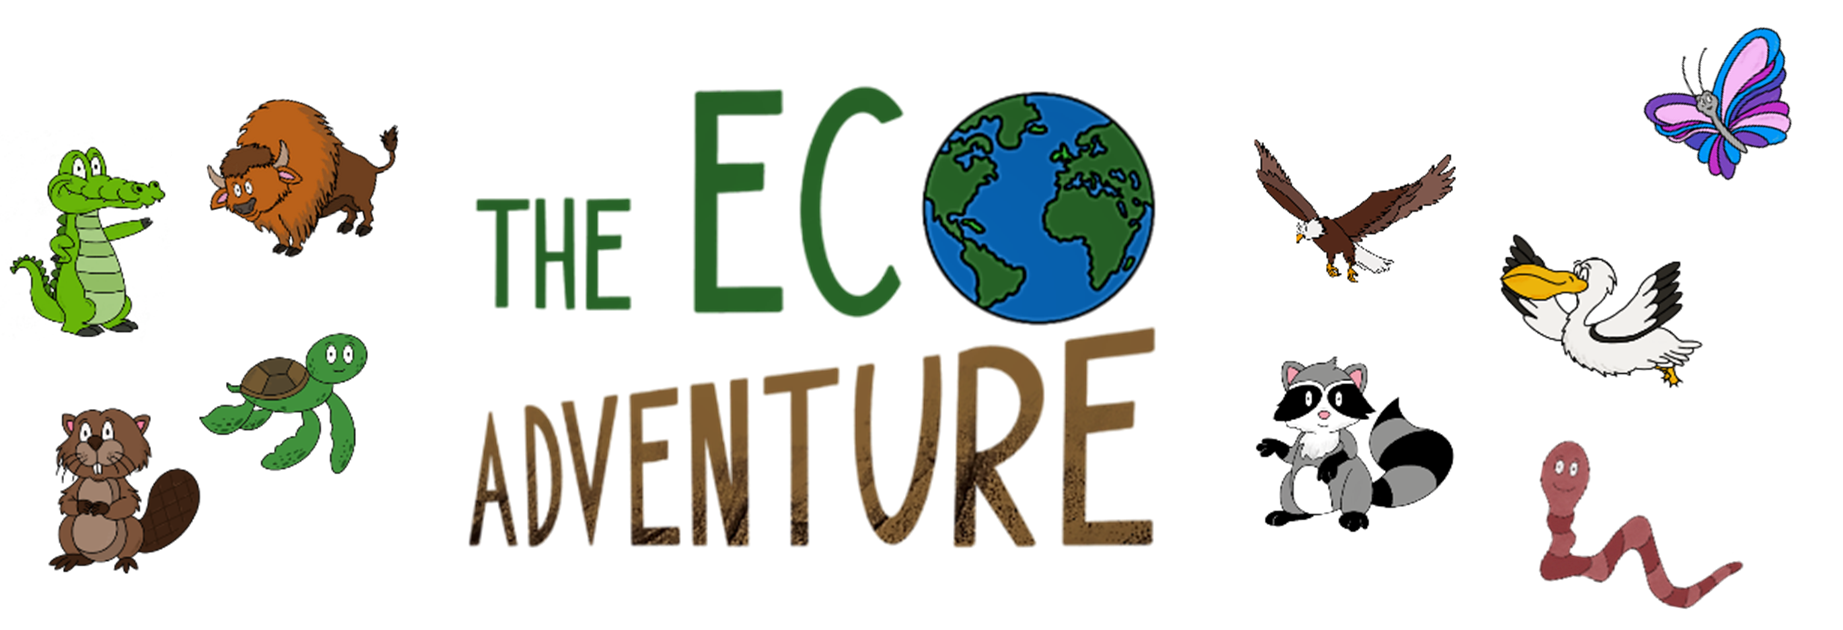 [FR] The Eco Adventure Demo